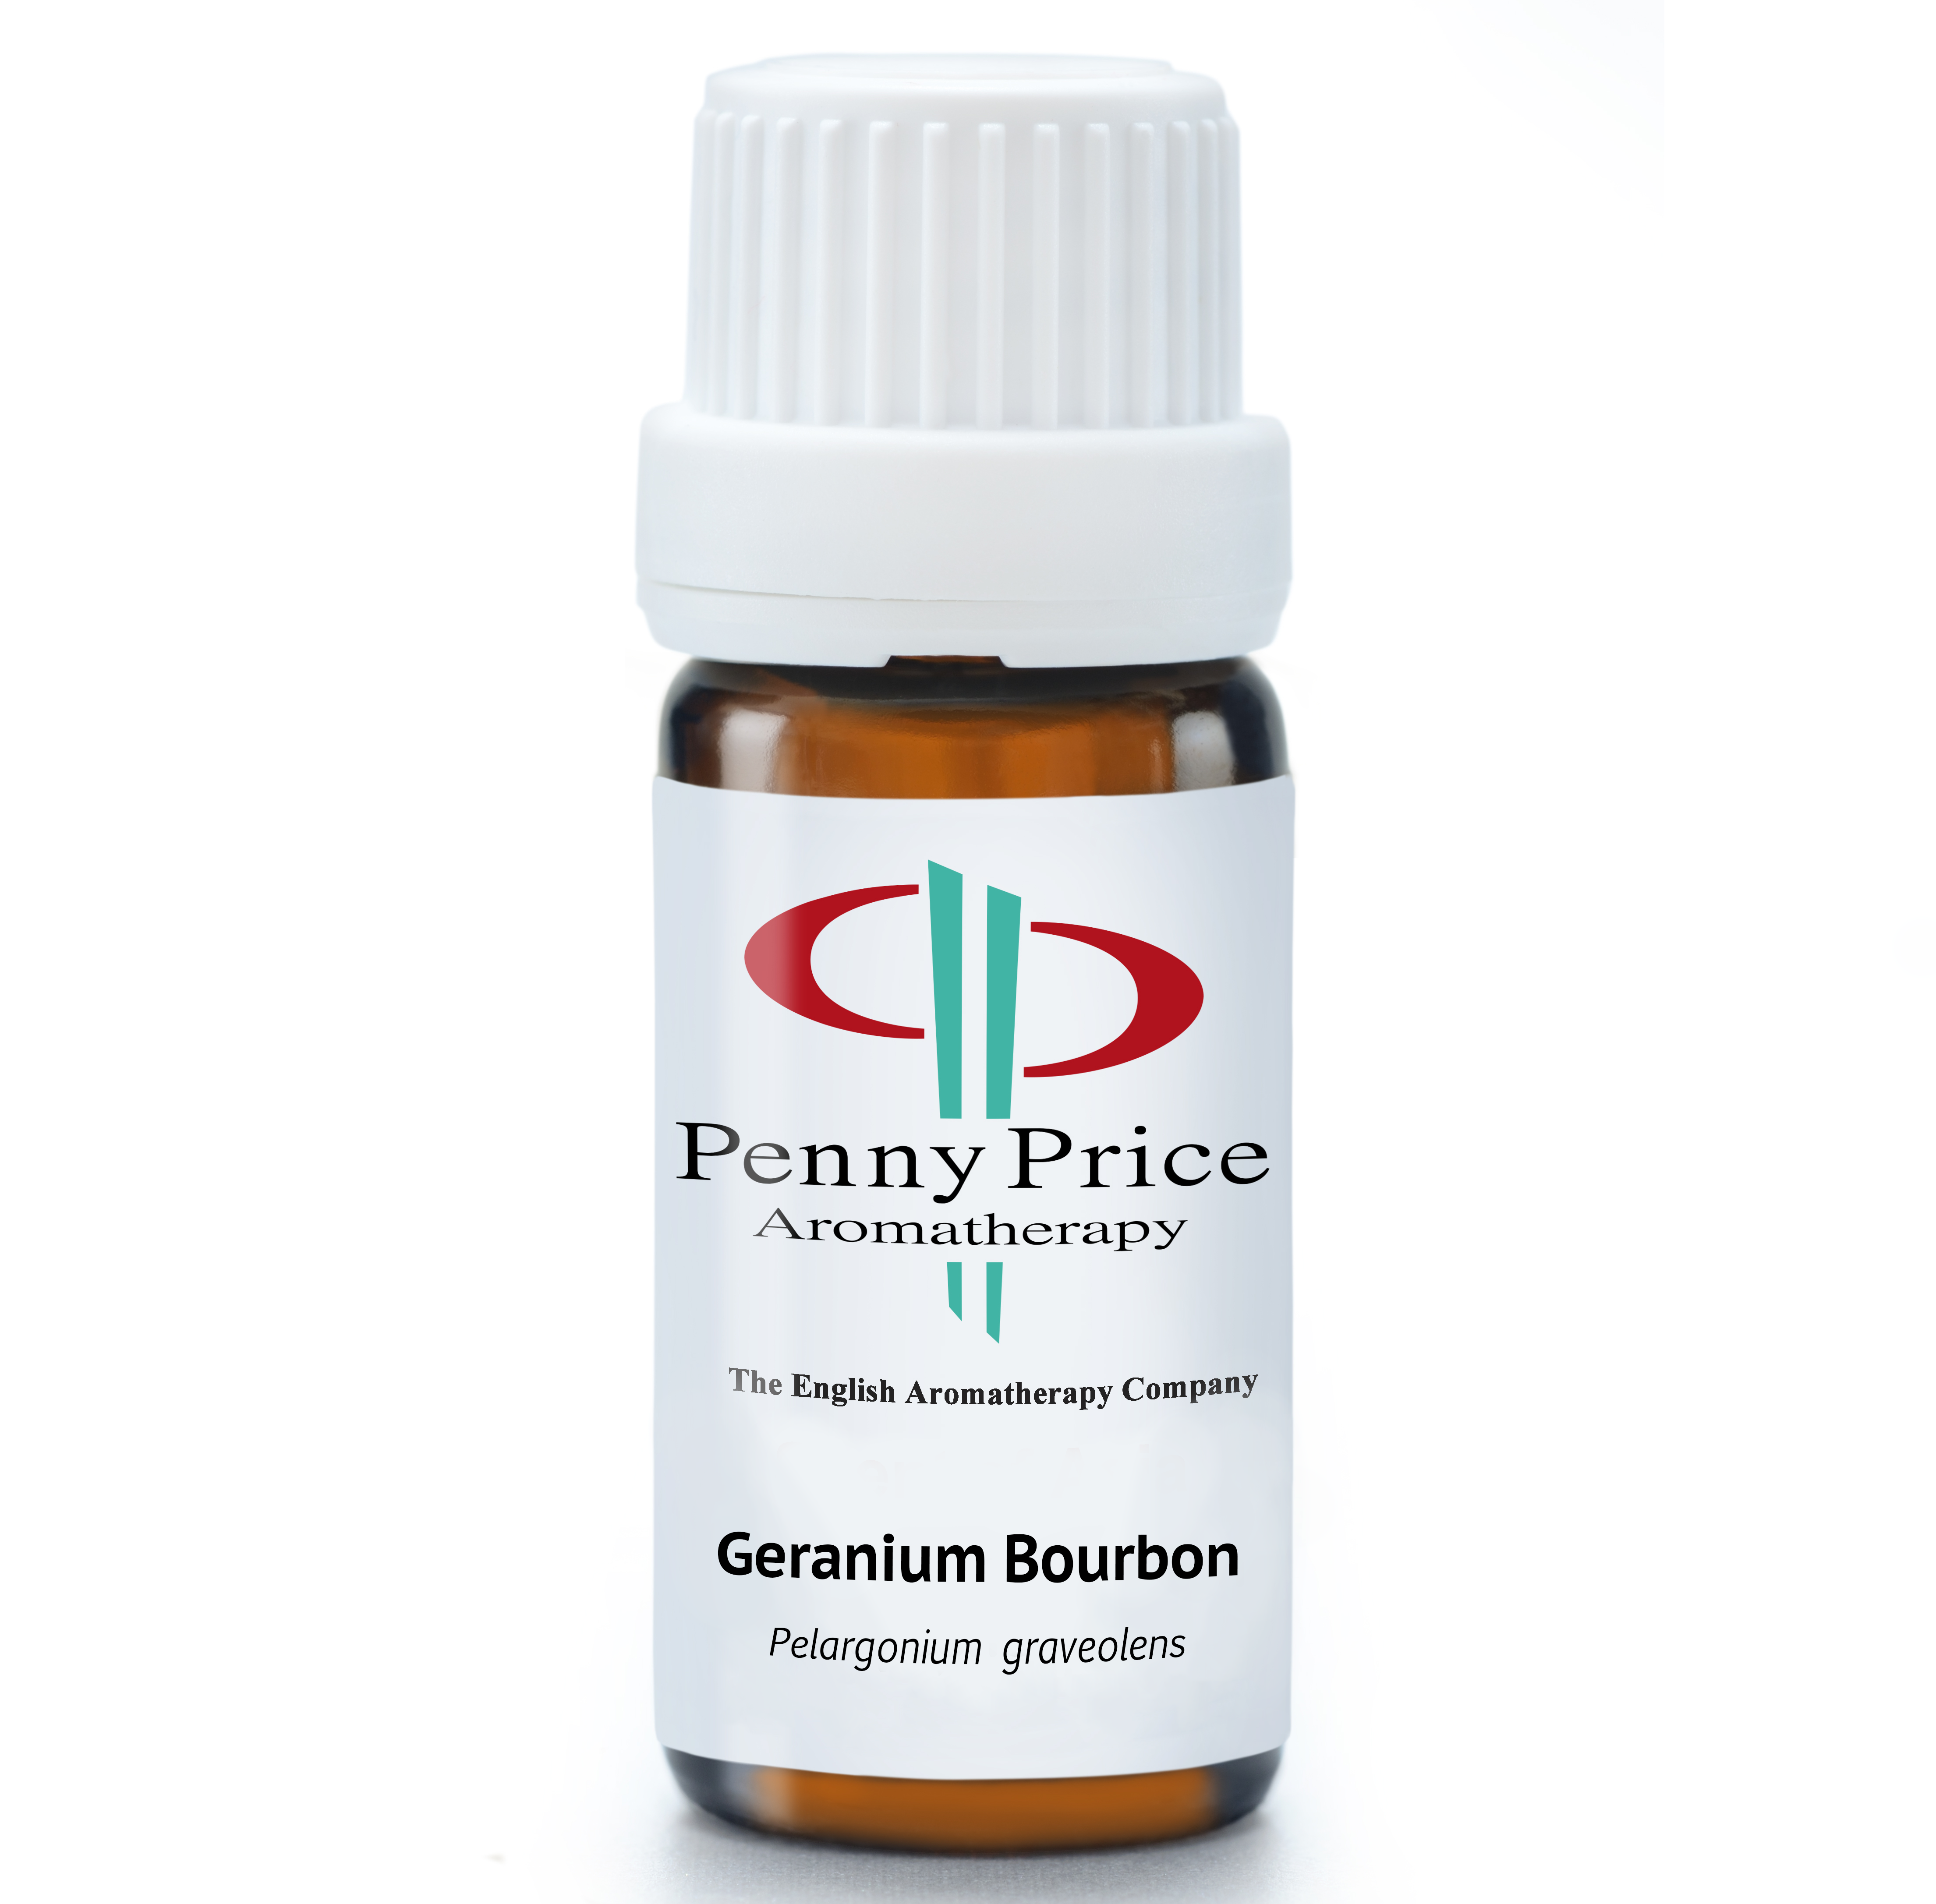 #Geranium Bourbon Essential Oil